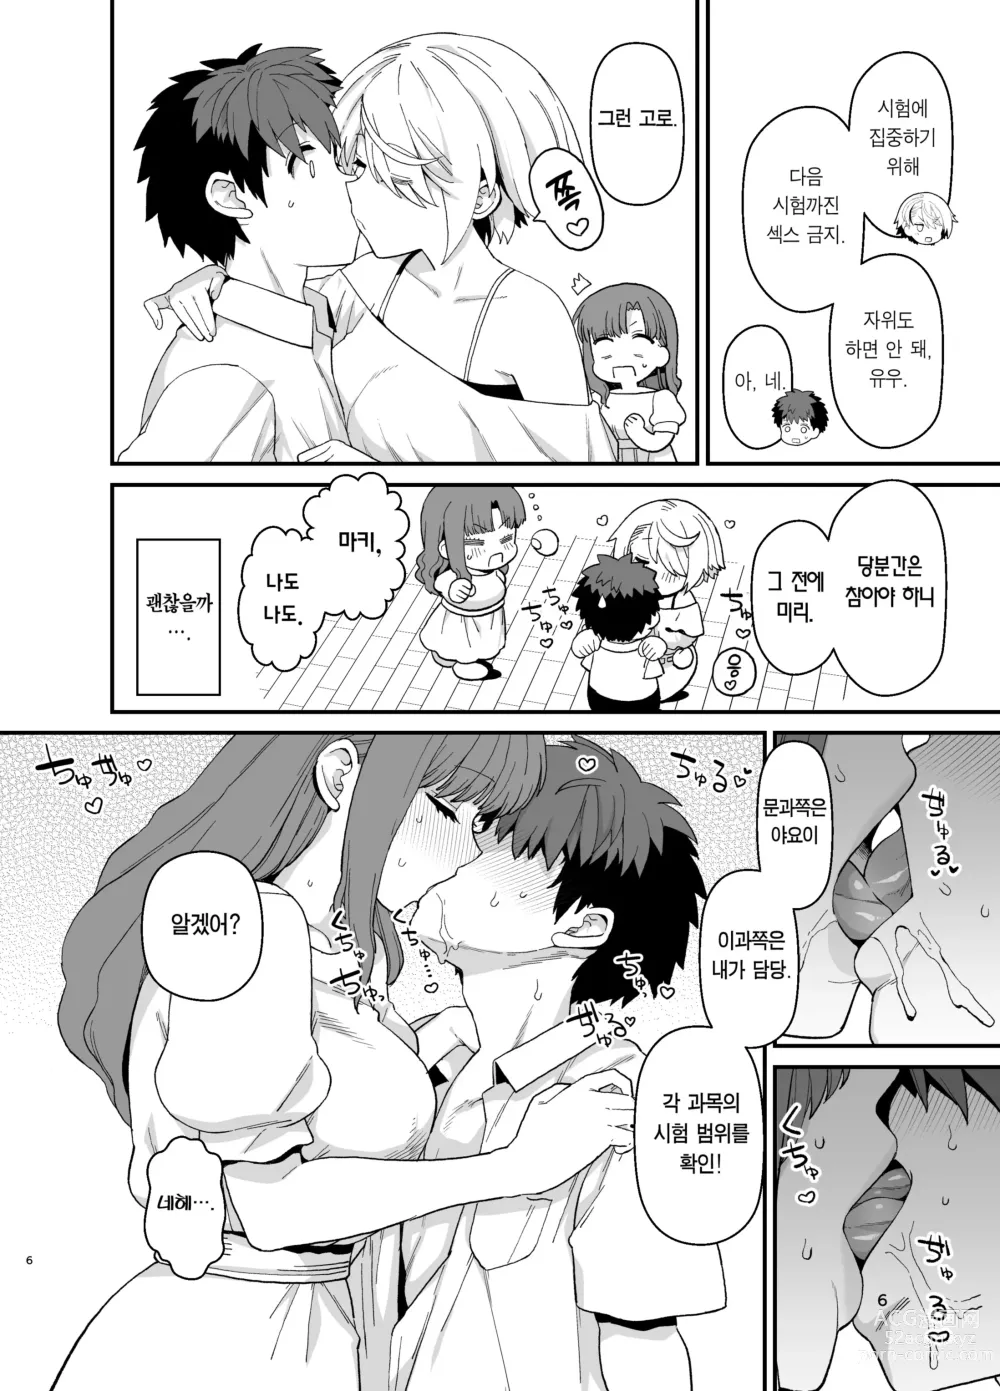 Page 7 of doujinshi 선택교화 2교시